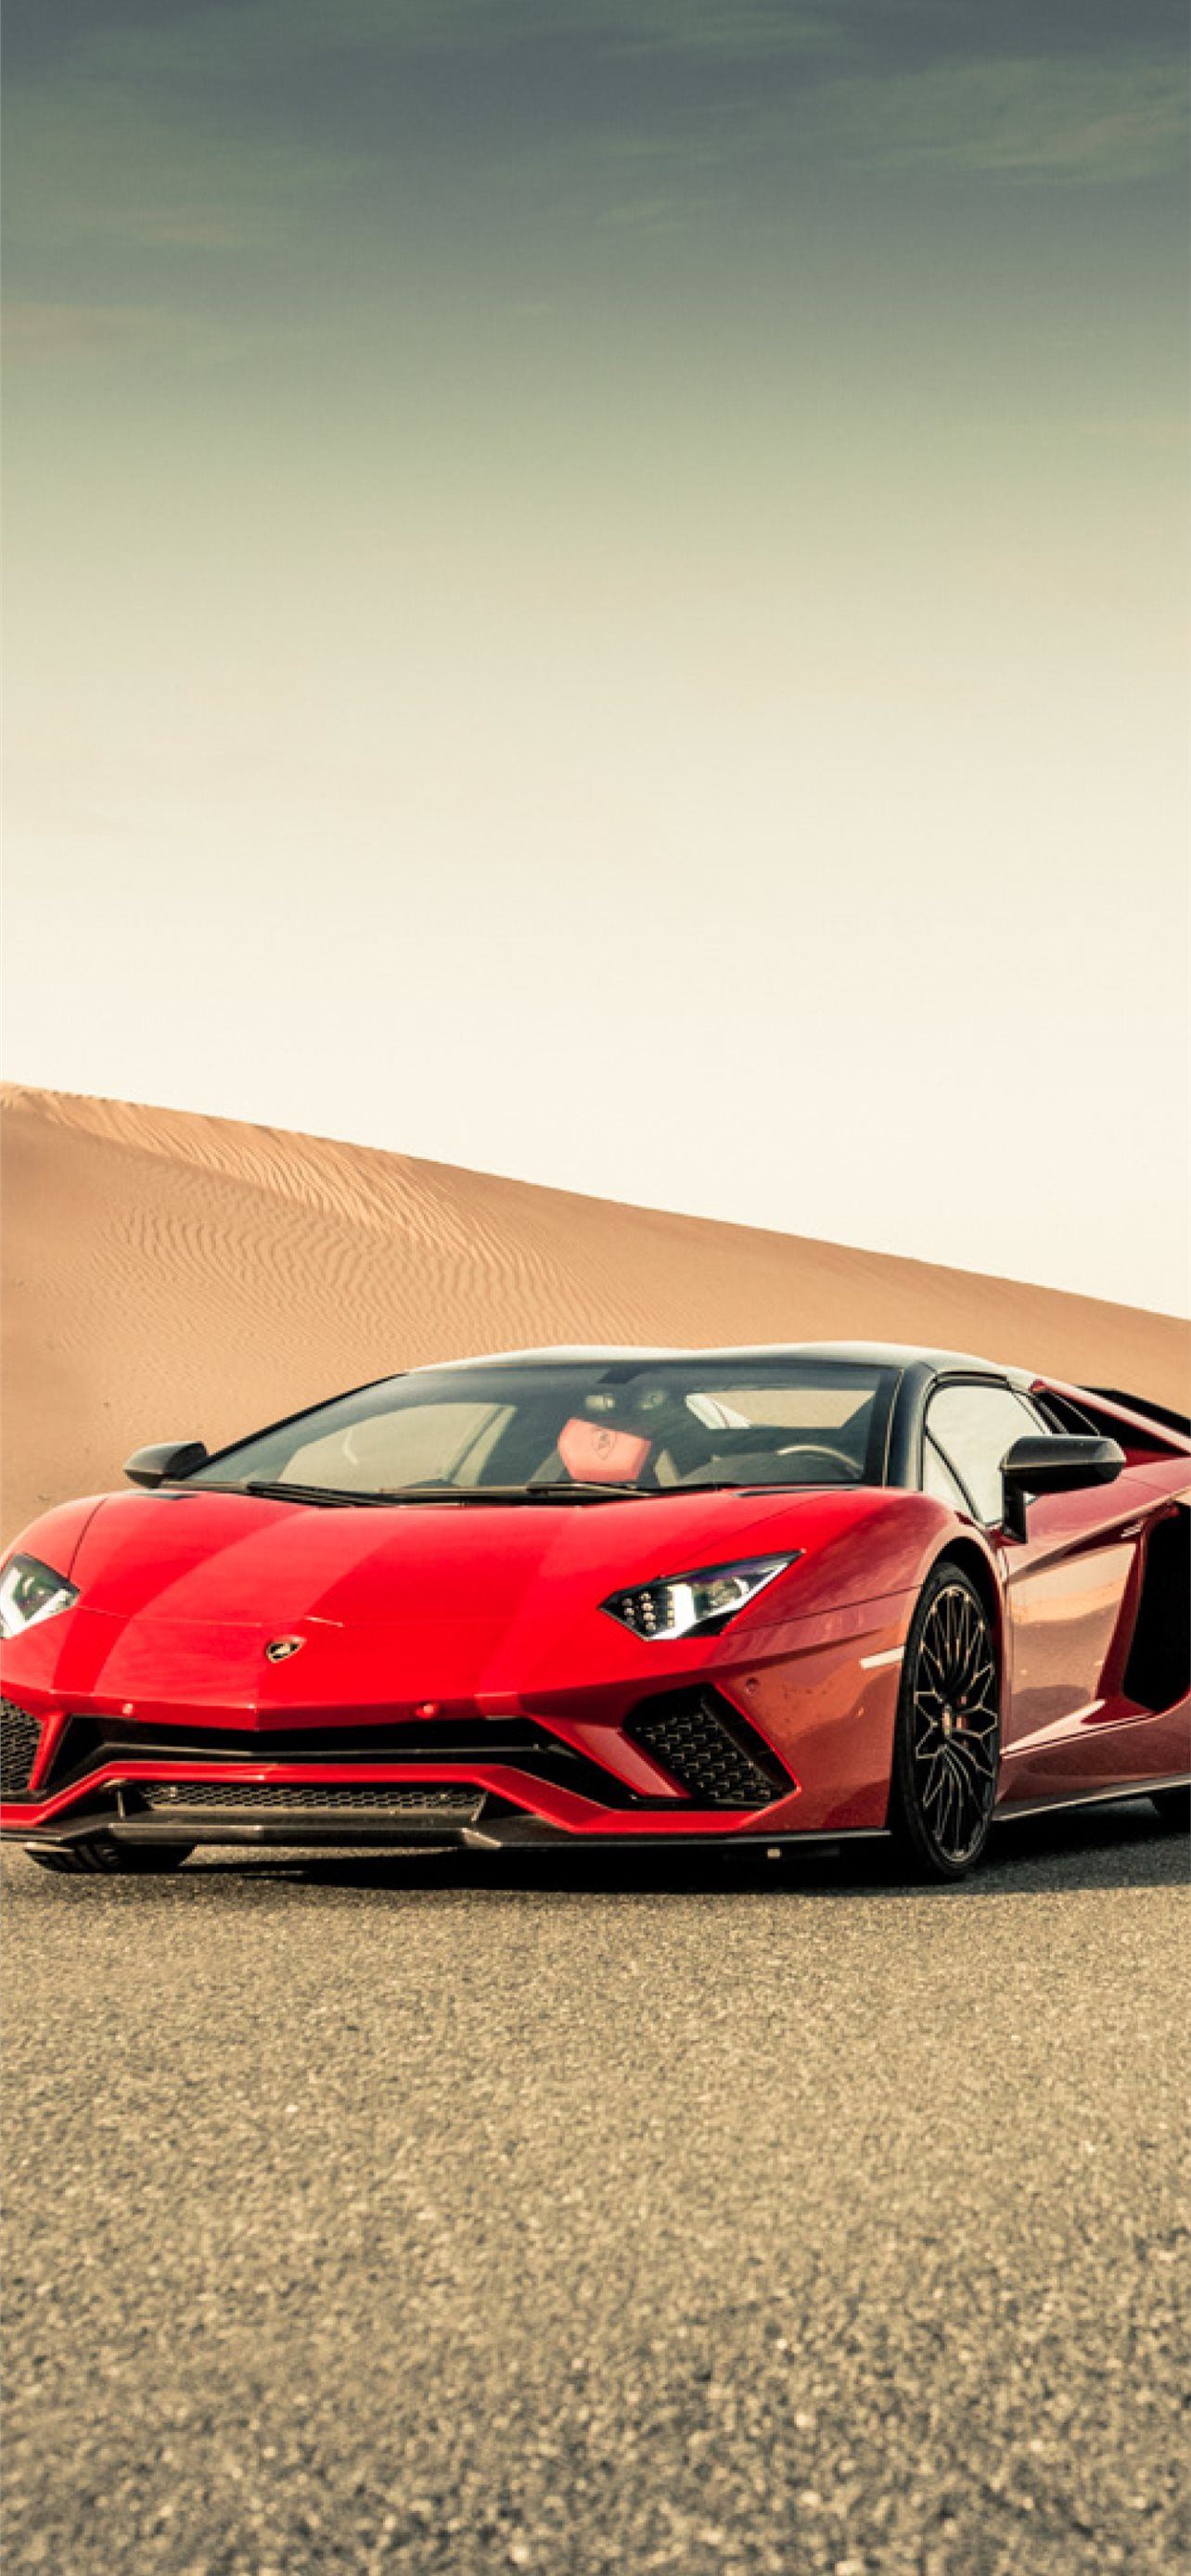 Lamborghini Aventador S Resolution HD Cars 4K Imag... iPhone Wallpapers  Free Download